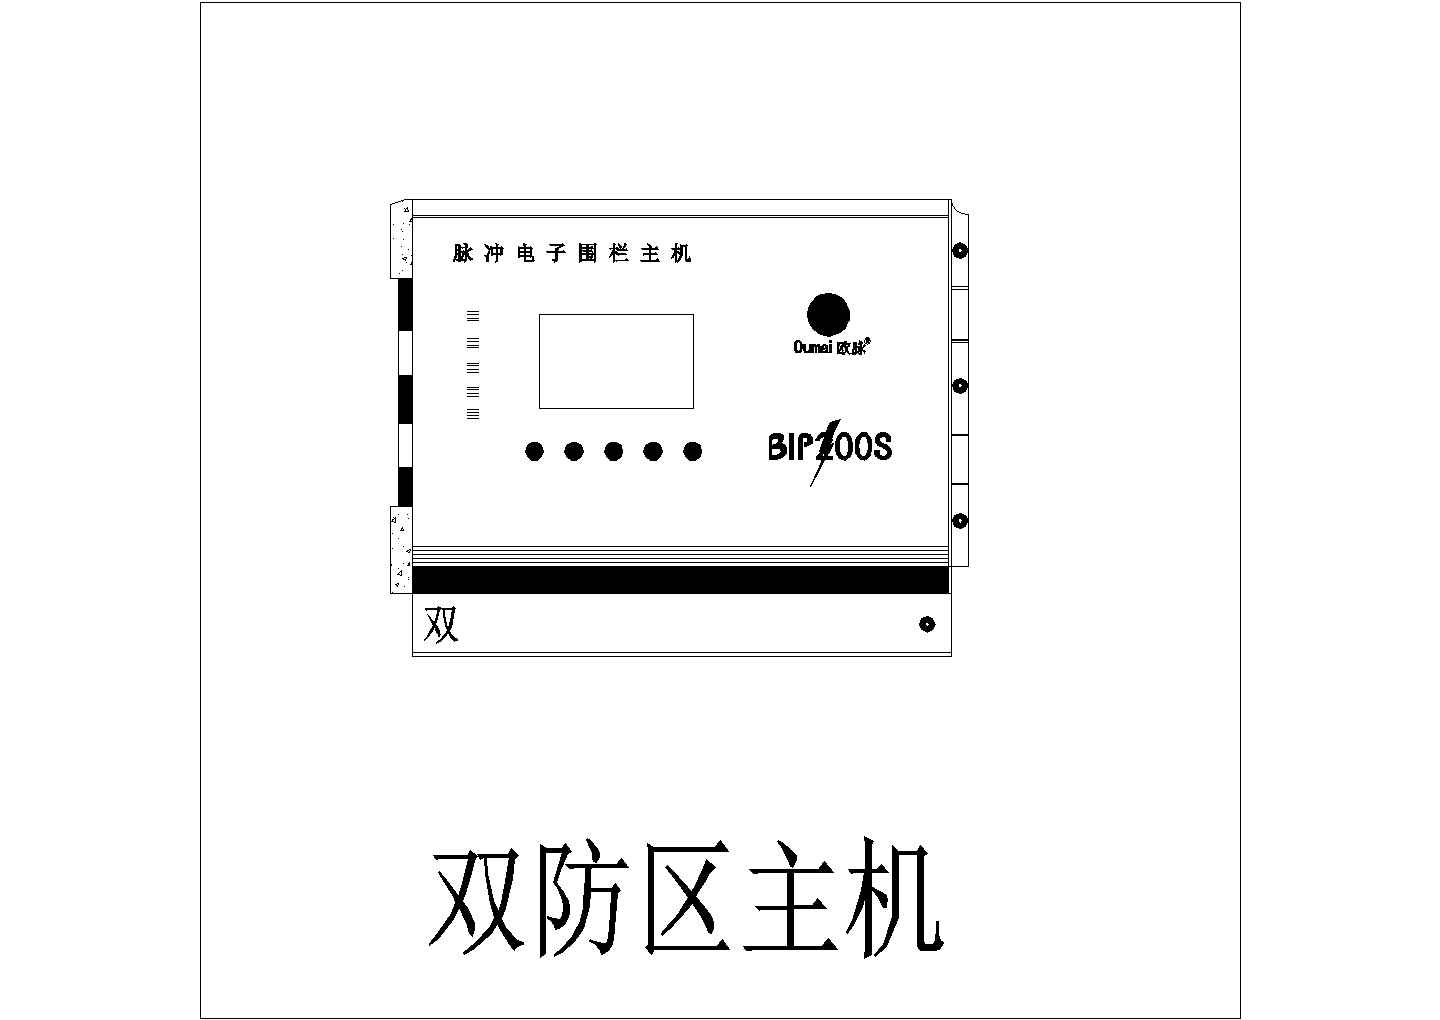 常熟江苏省天然气公司周界（电子围栏）报警系统设计CAD图